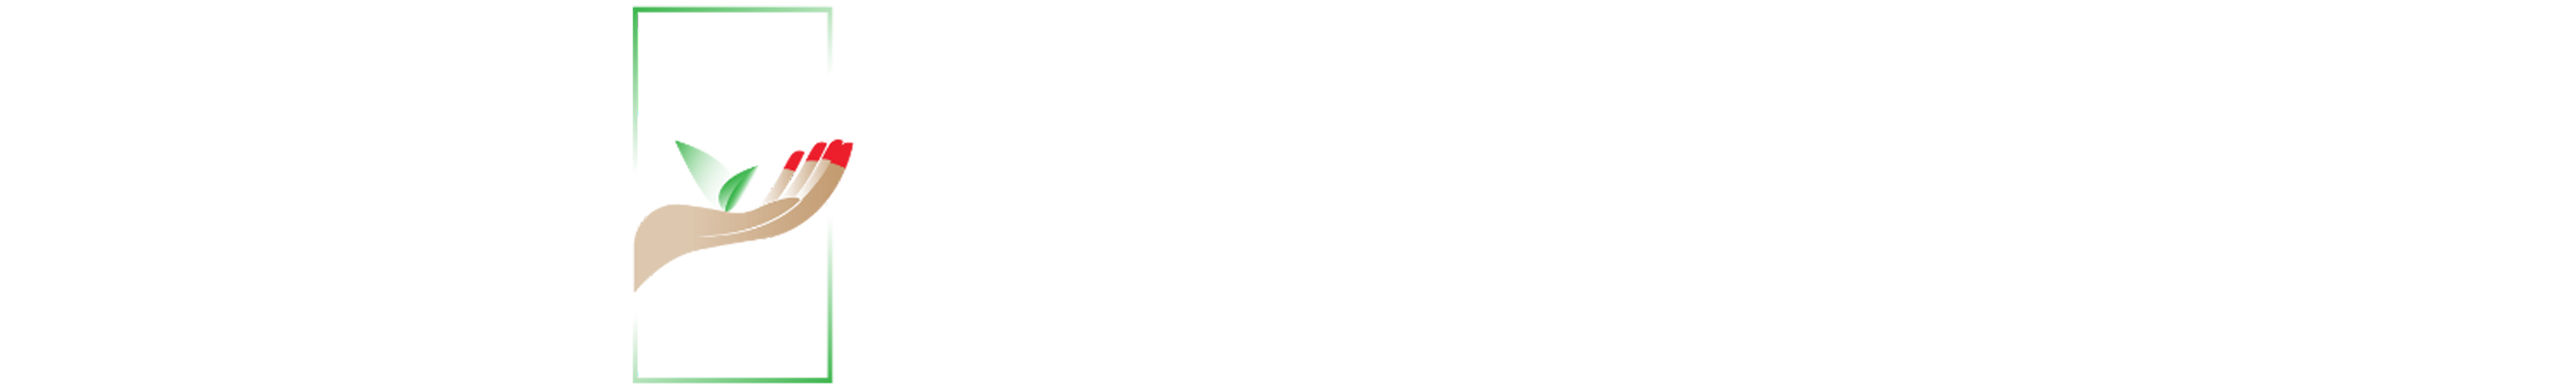 SvEco-logo